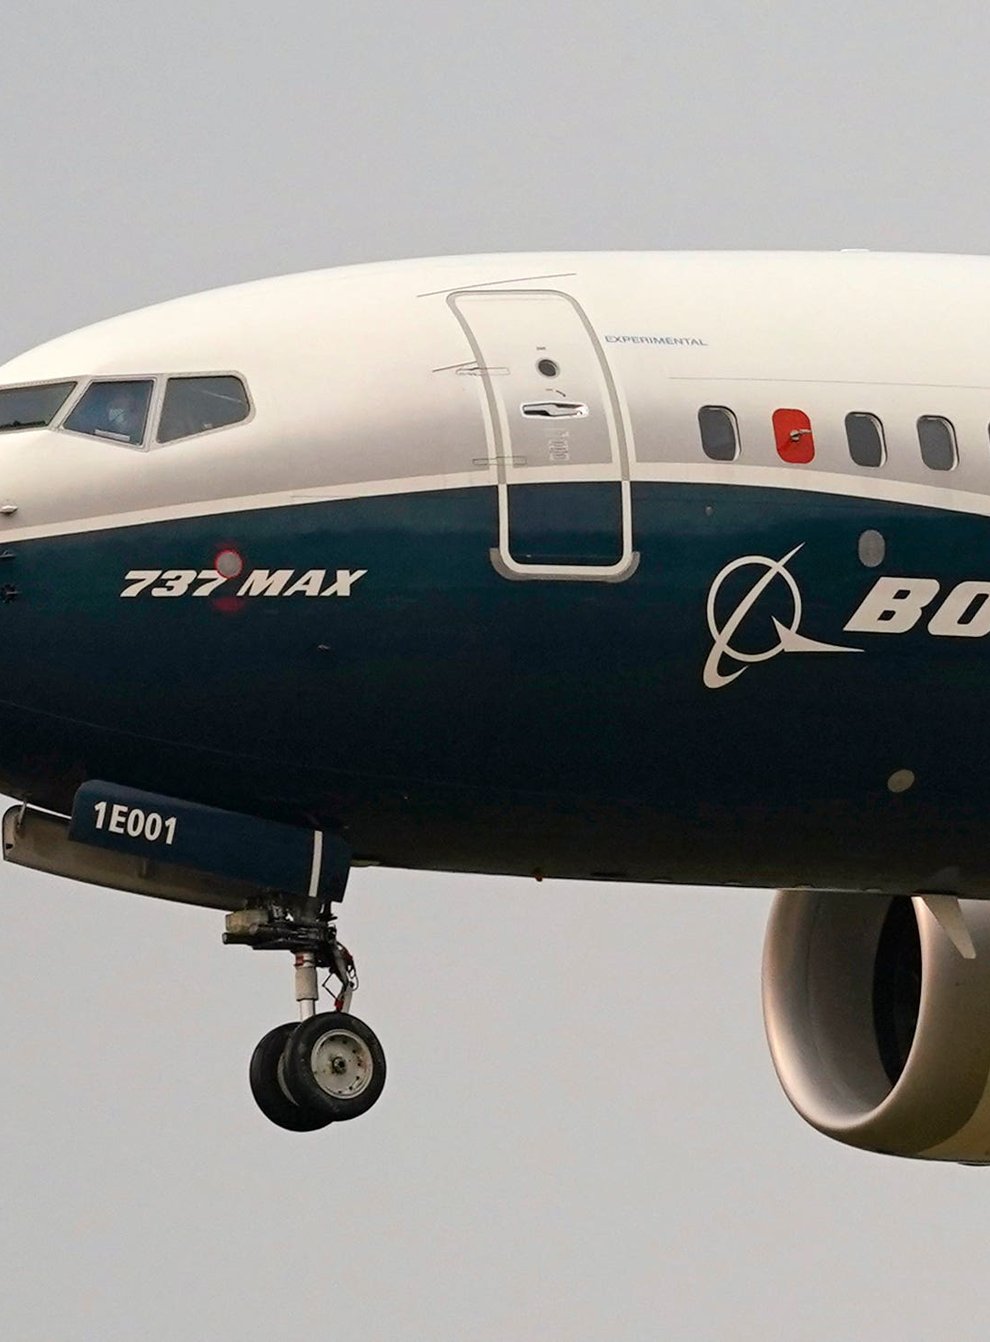 A Boeing 737 Max jet prepares to land (Elaine Thompson/AP)